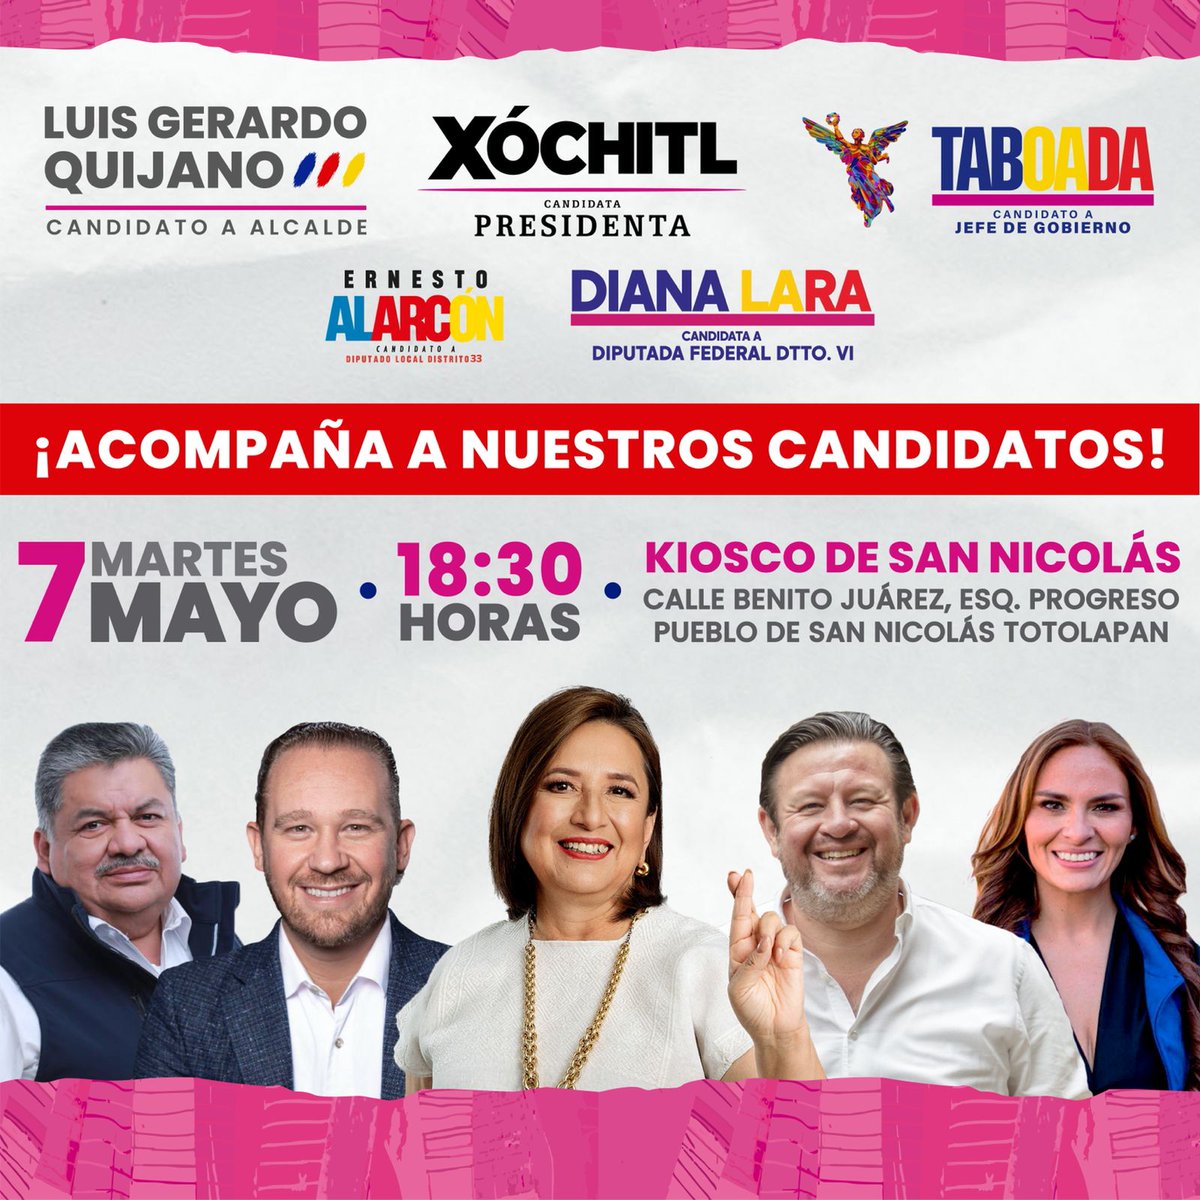 Demostrando el apoyo de #LaMagdalenaContreras hacia la alianza, estaremos con @XochitlGalvez @STaboadaMx @Luis_GQM Ernesto Alarcón y Diana Lara